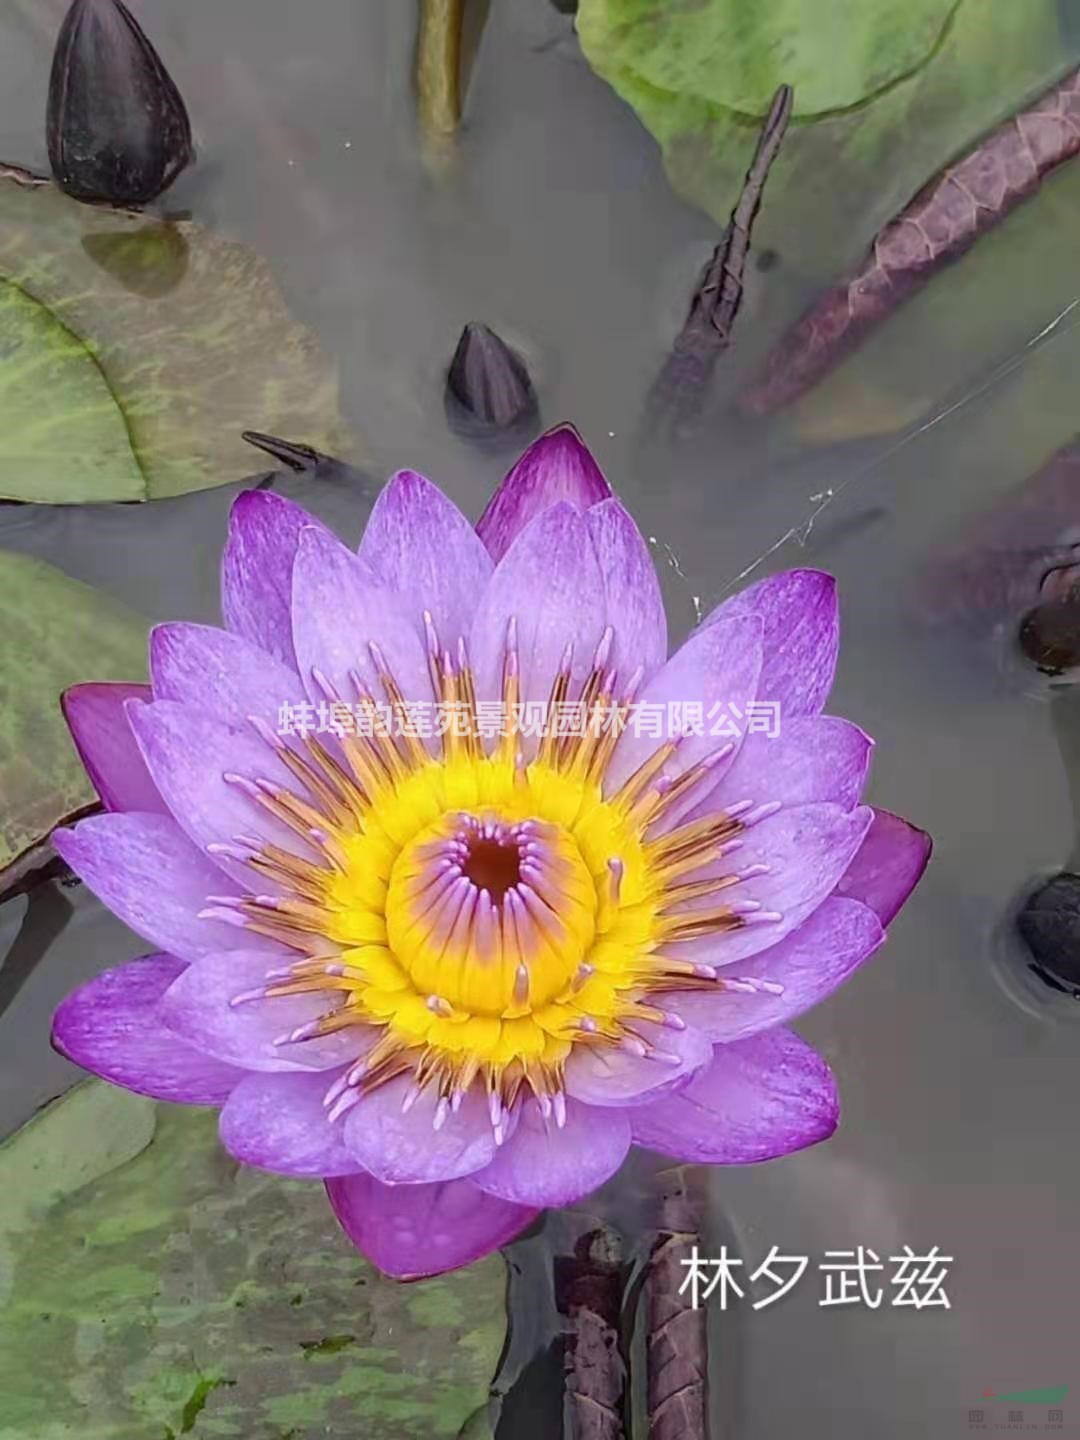 安徽蚌埠水生植物睡莲出售 